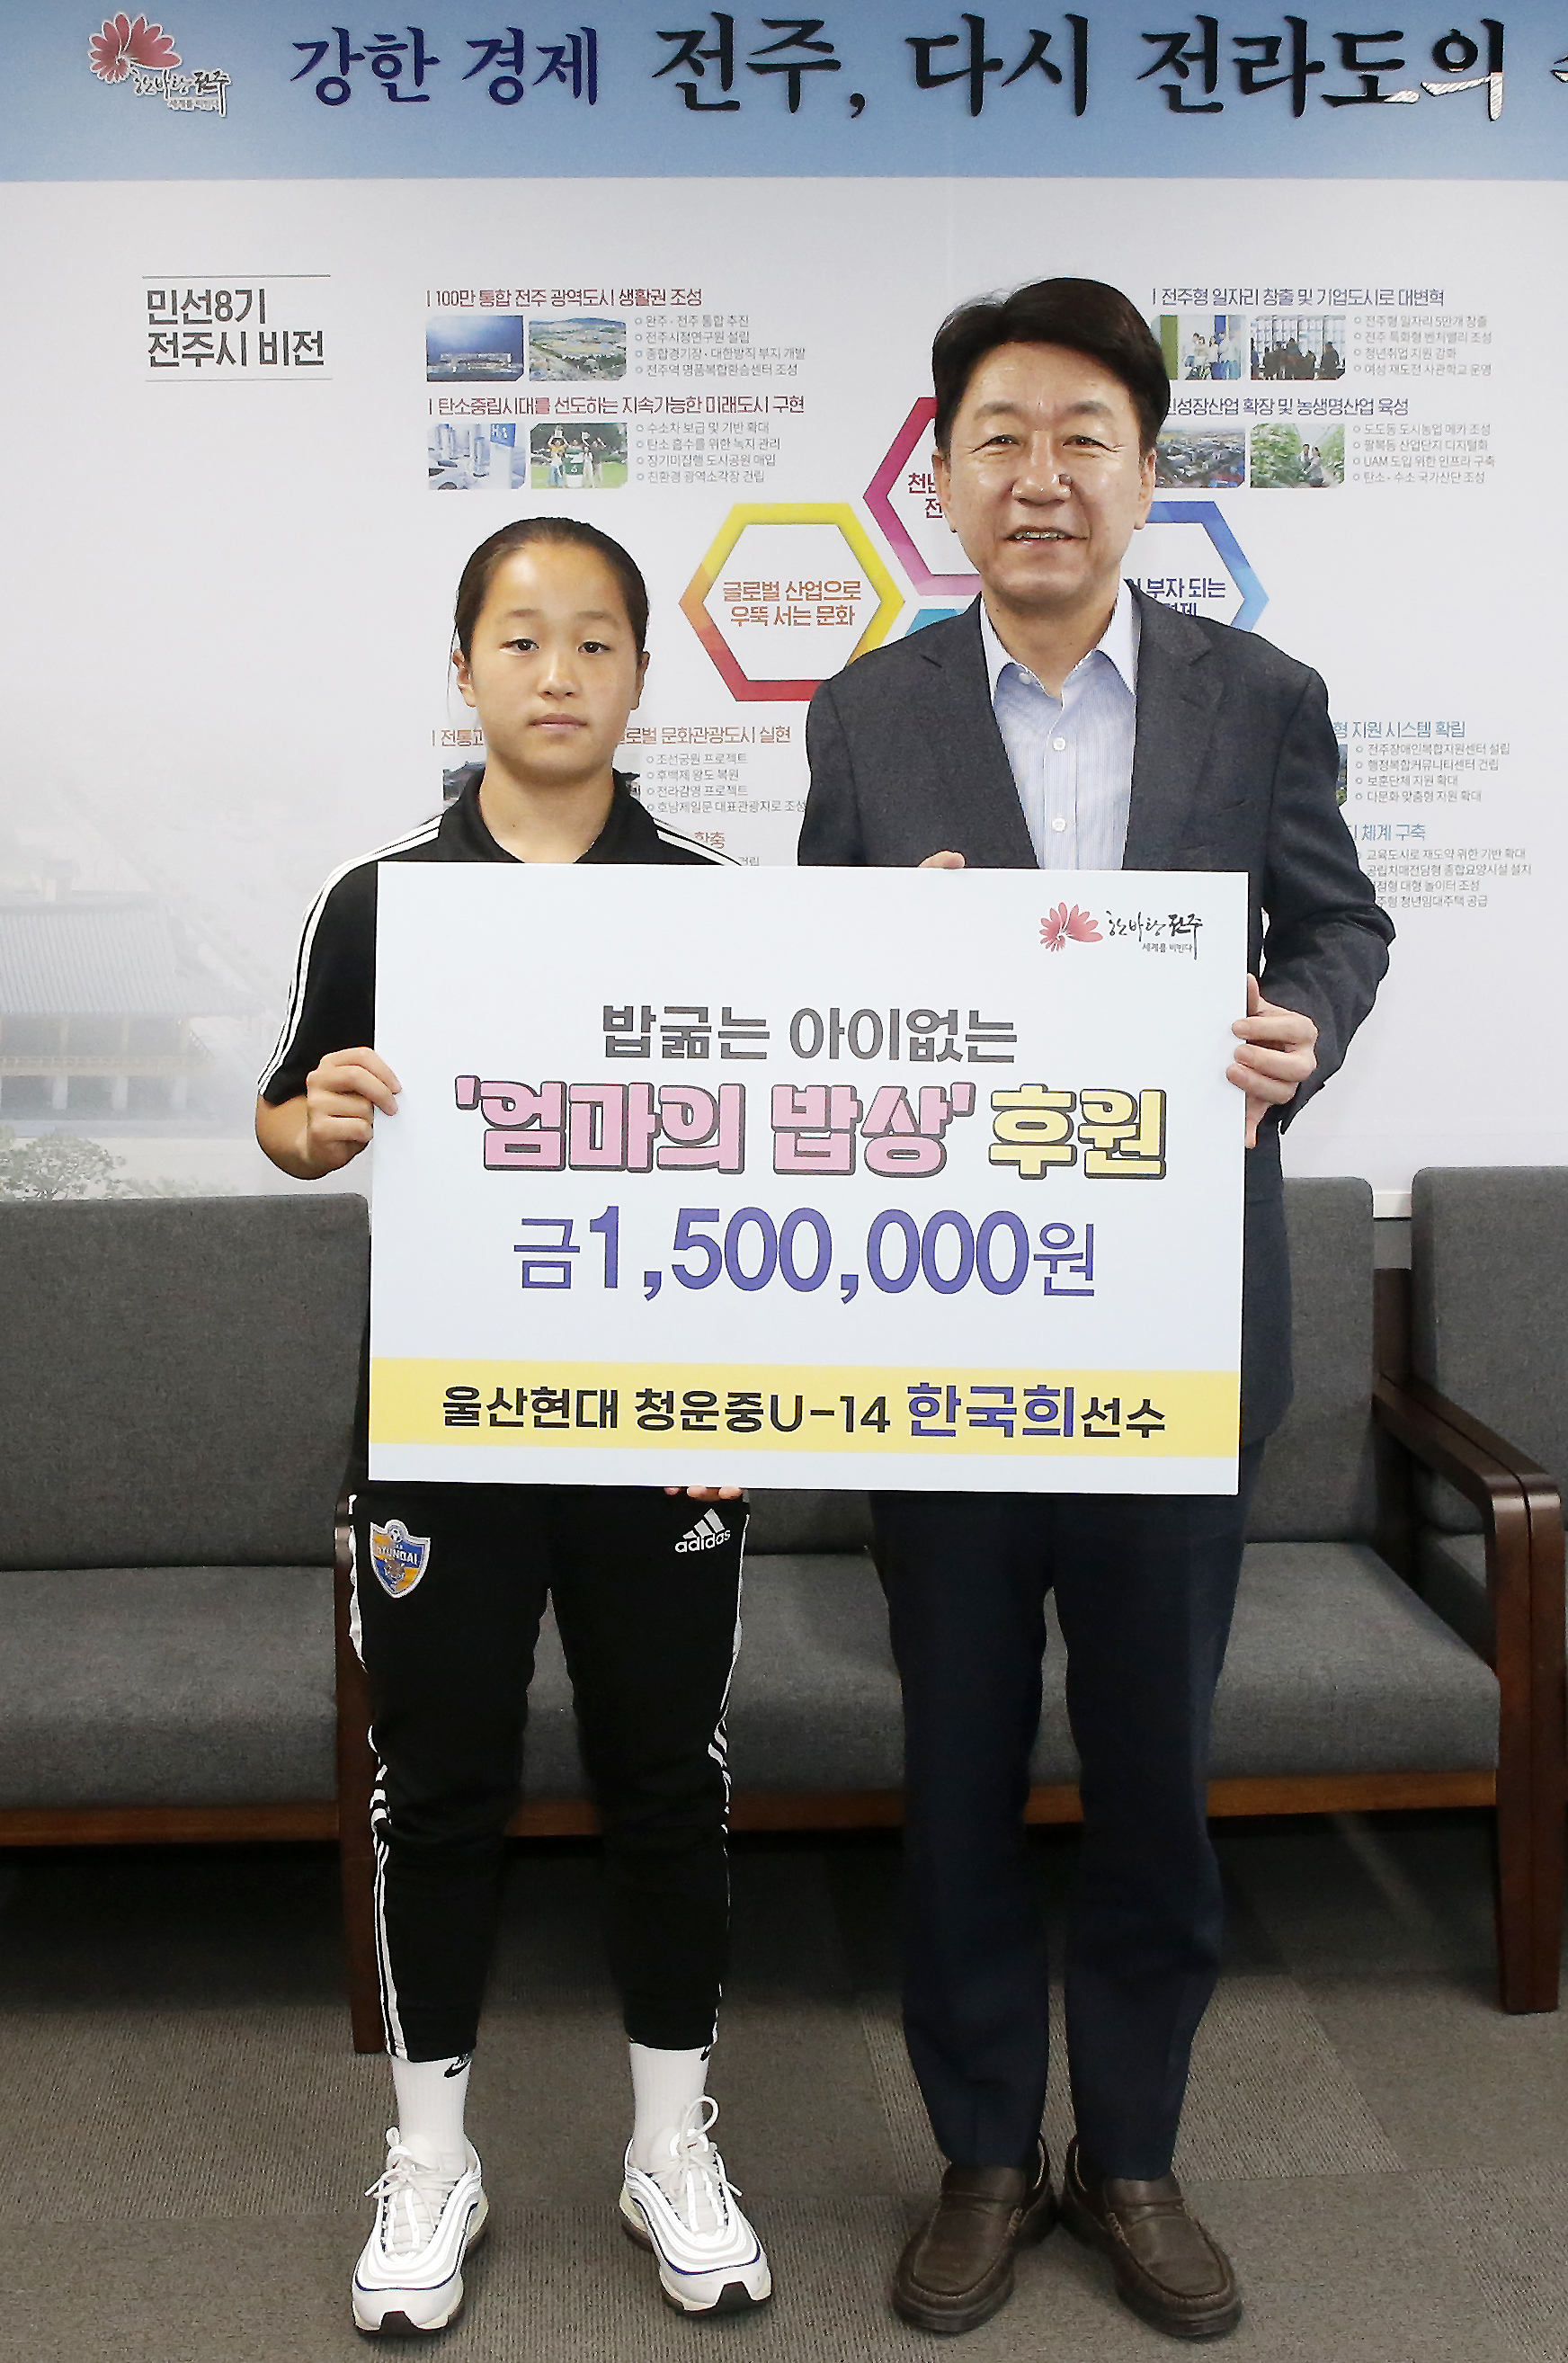 한국희 선수는 8일 전주시장실을 찾아 ‘엄마의 밥상’ 사업을 위한 성금 150만원을 기부했다. 전주시 제공